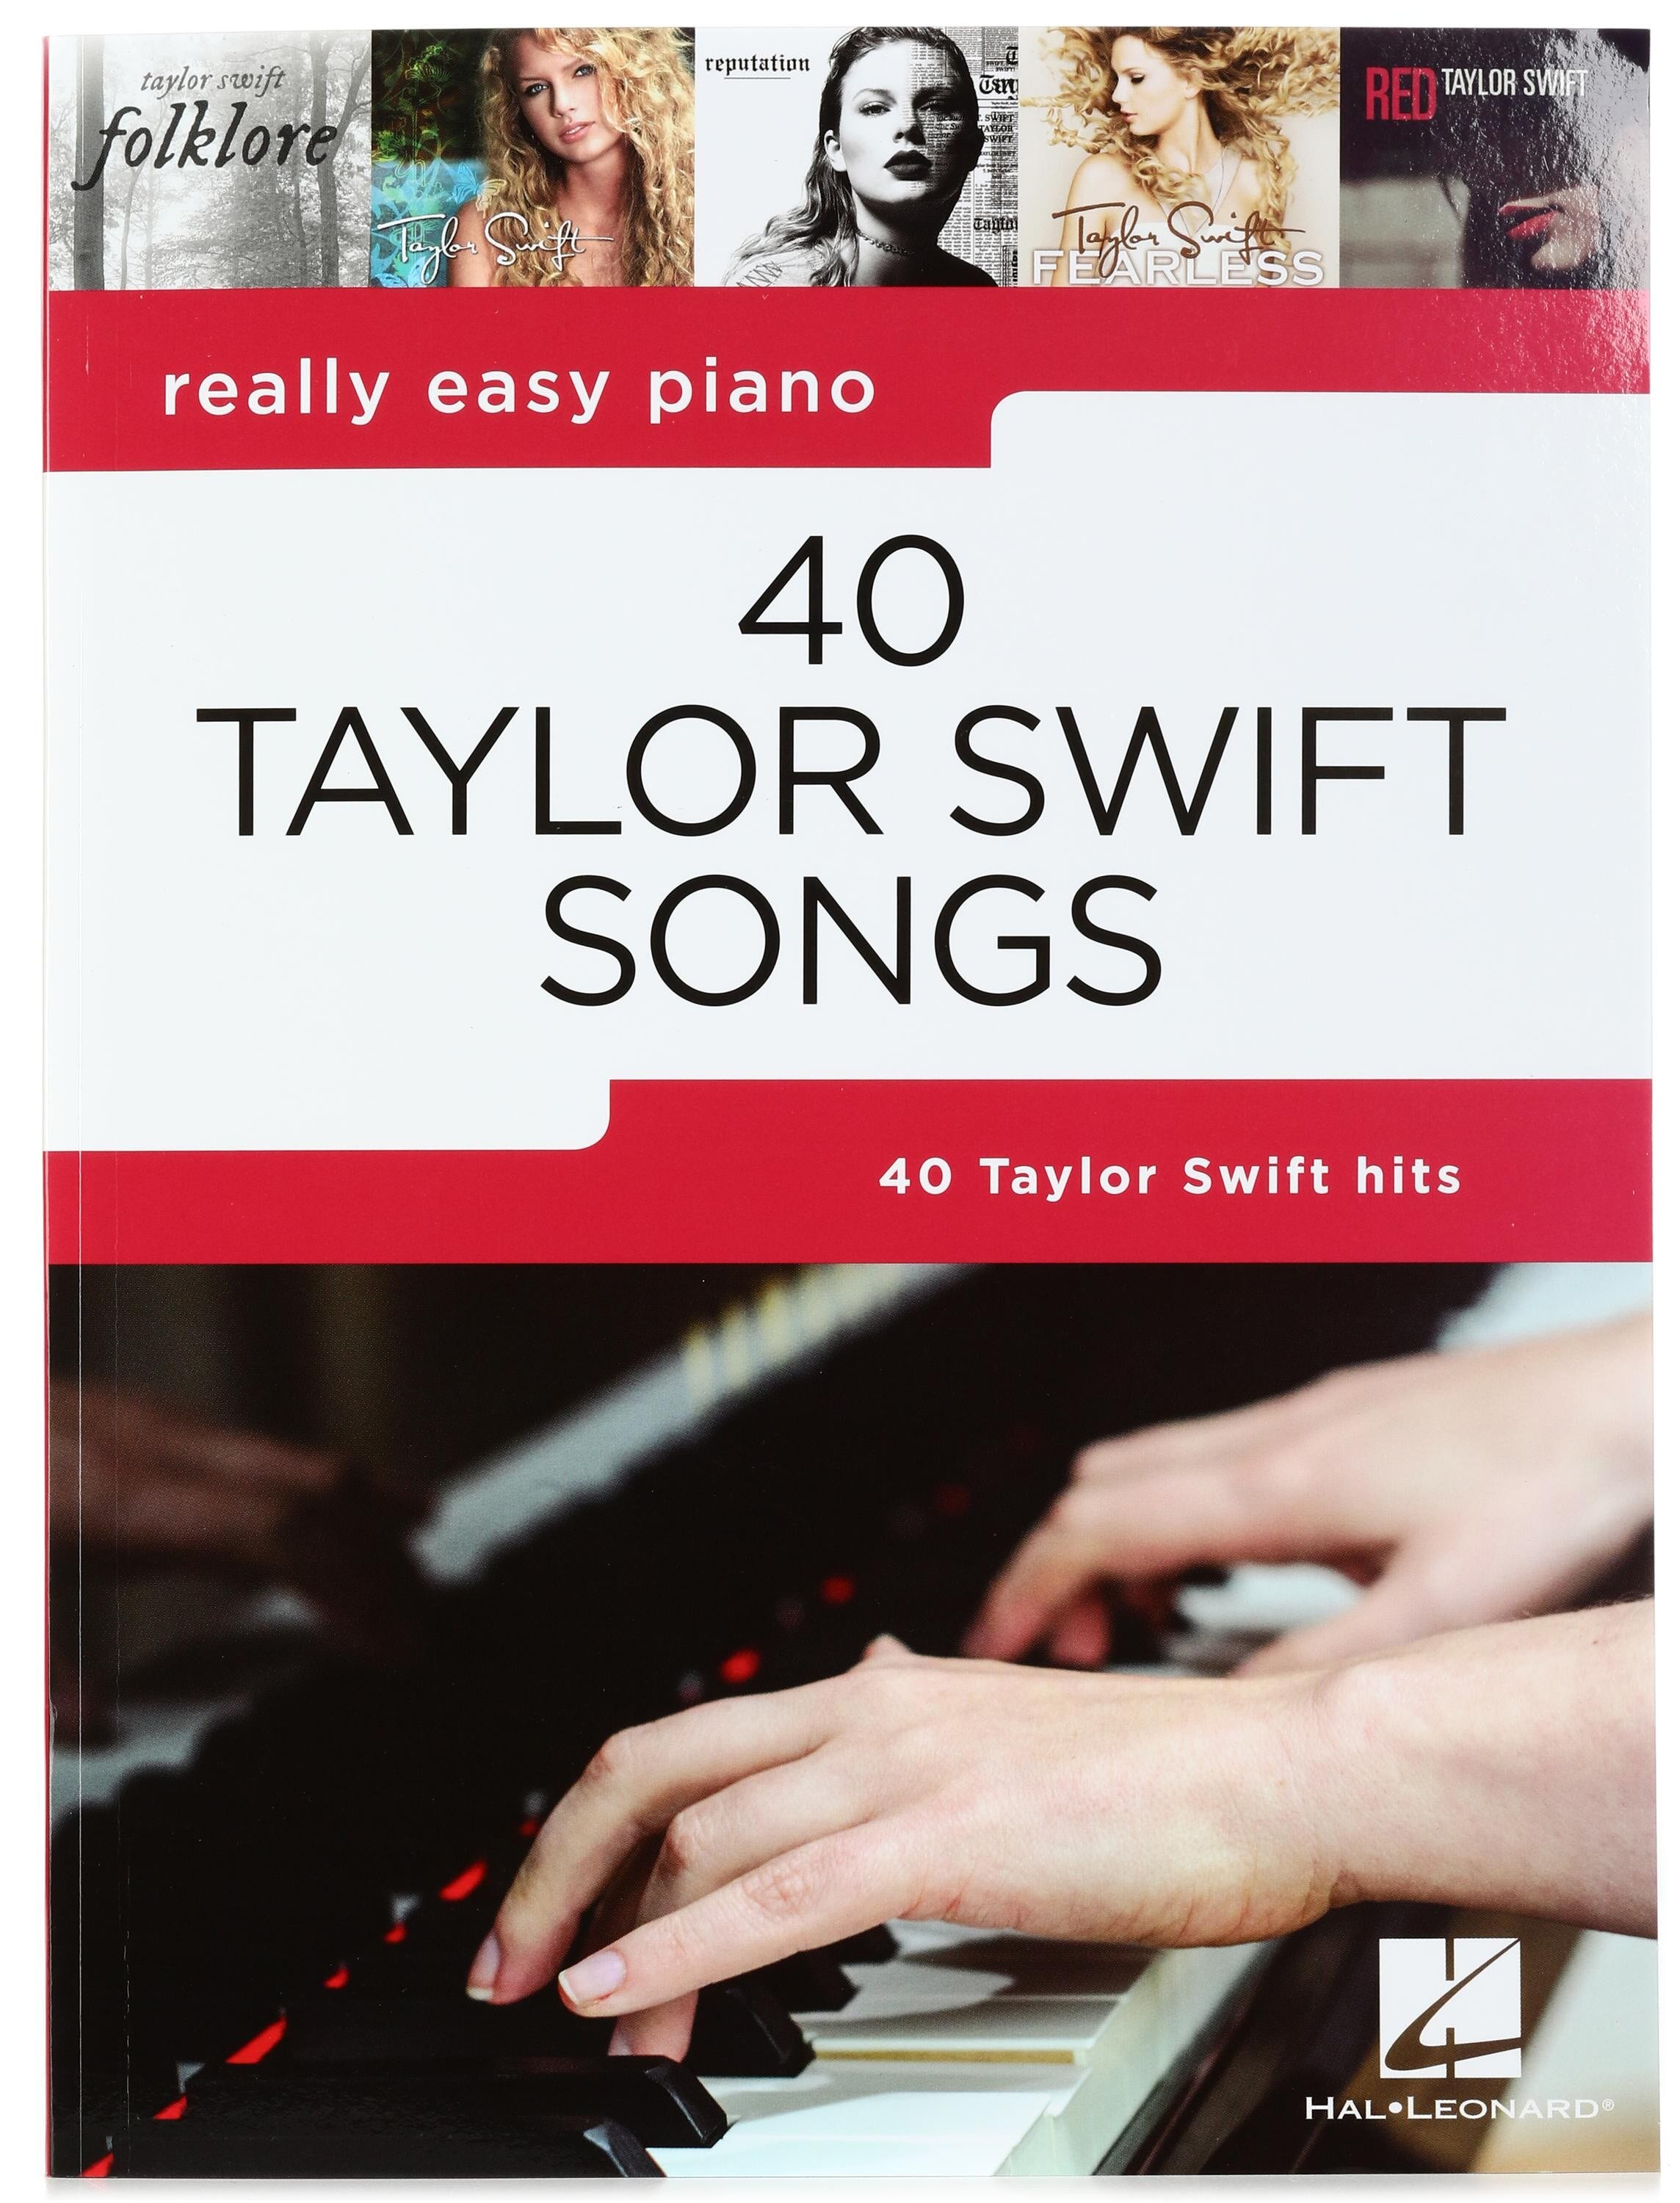 Hal Leonard - Buy sheet music, scores & songbooks